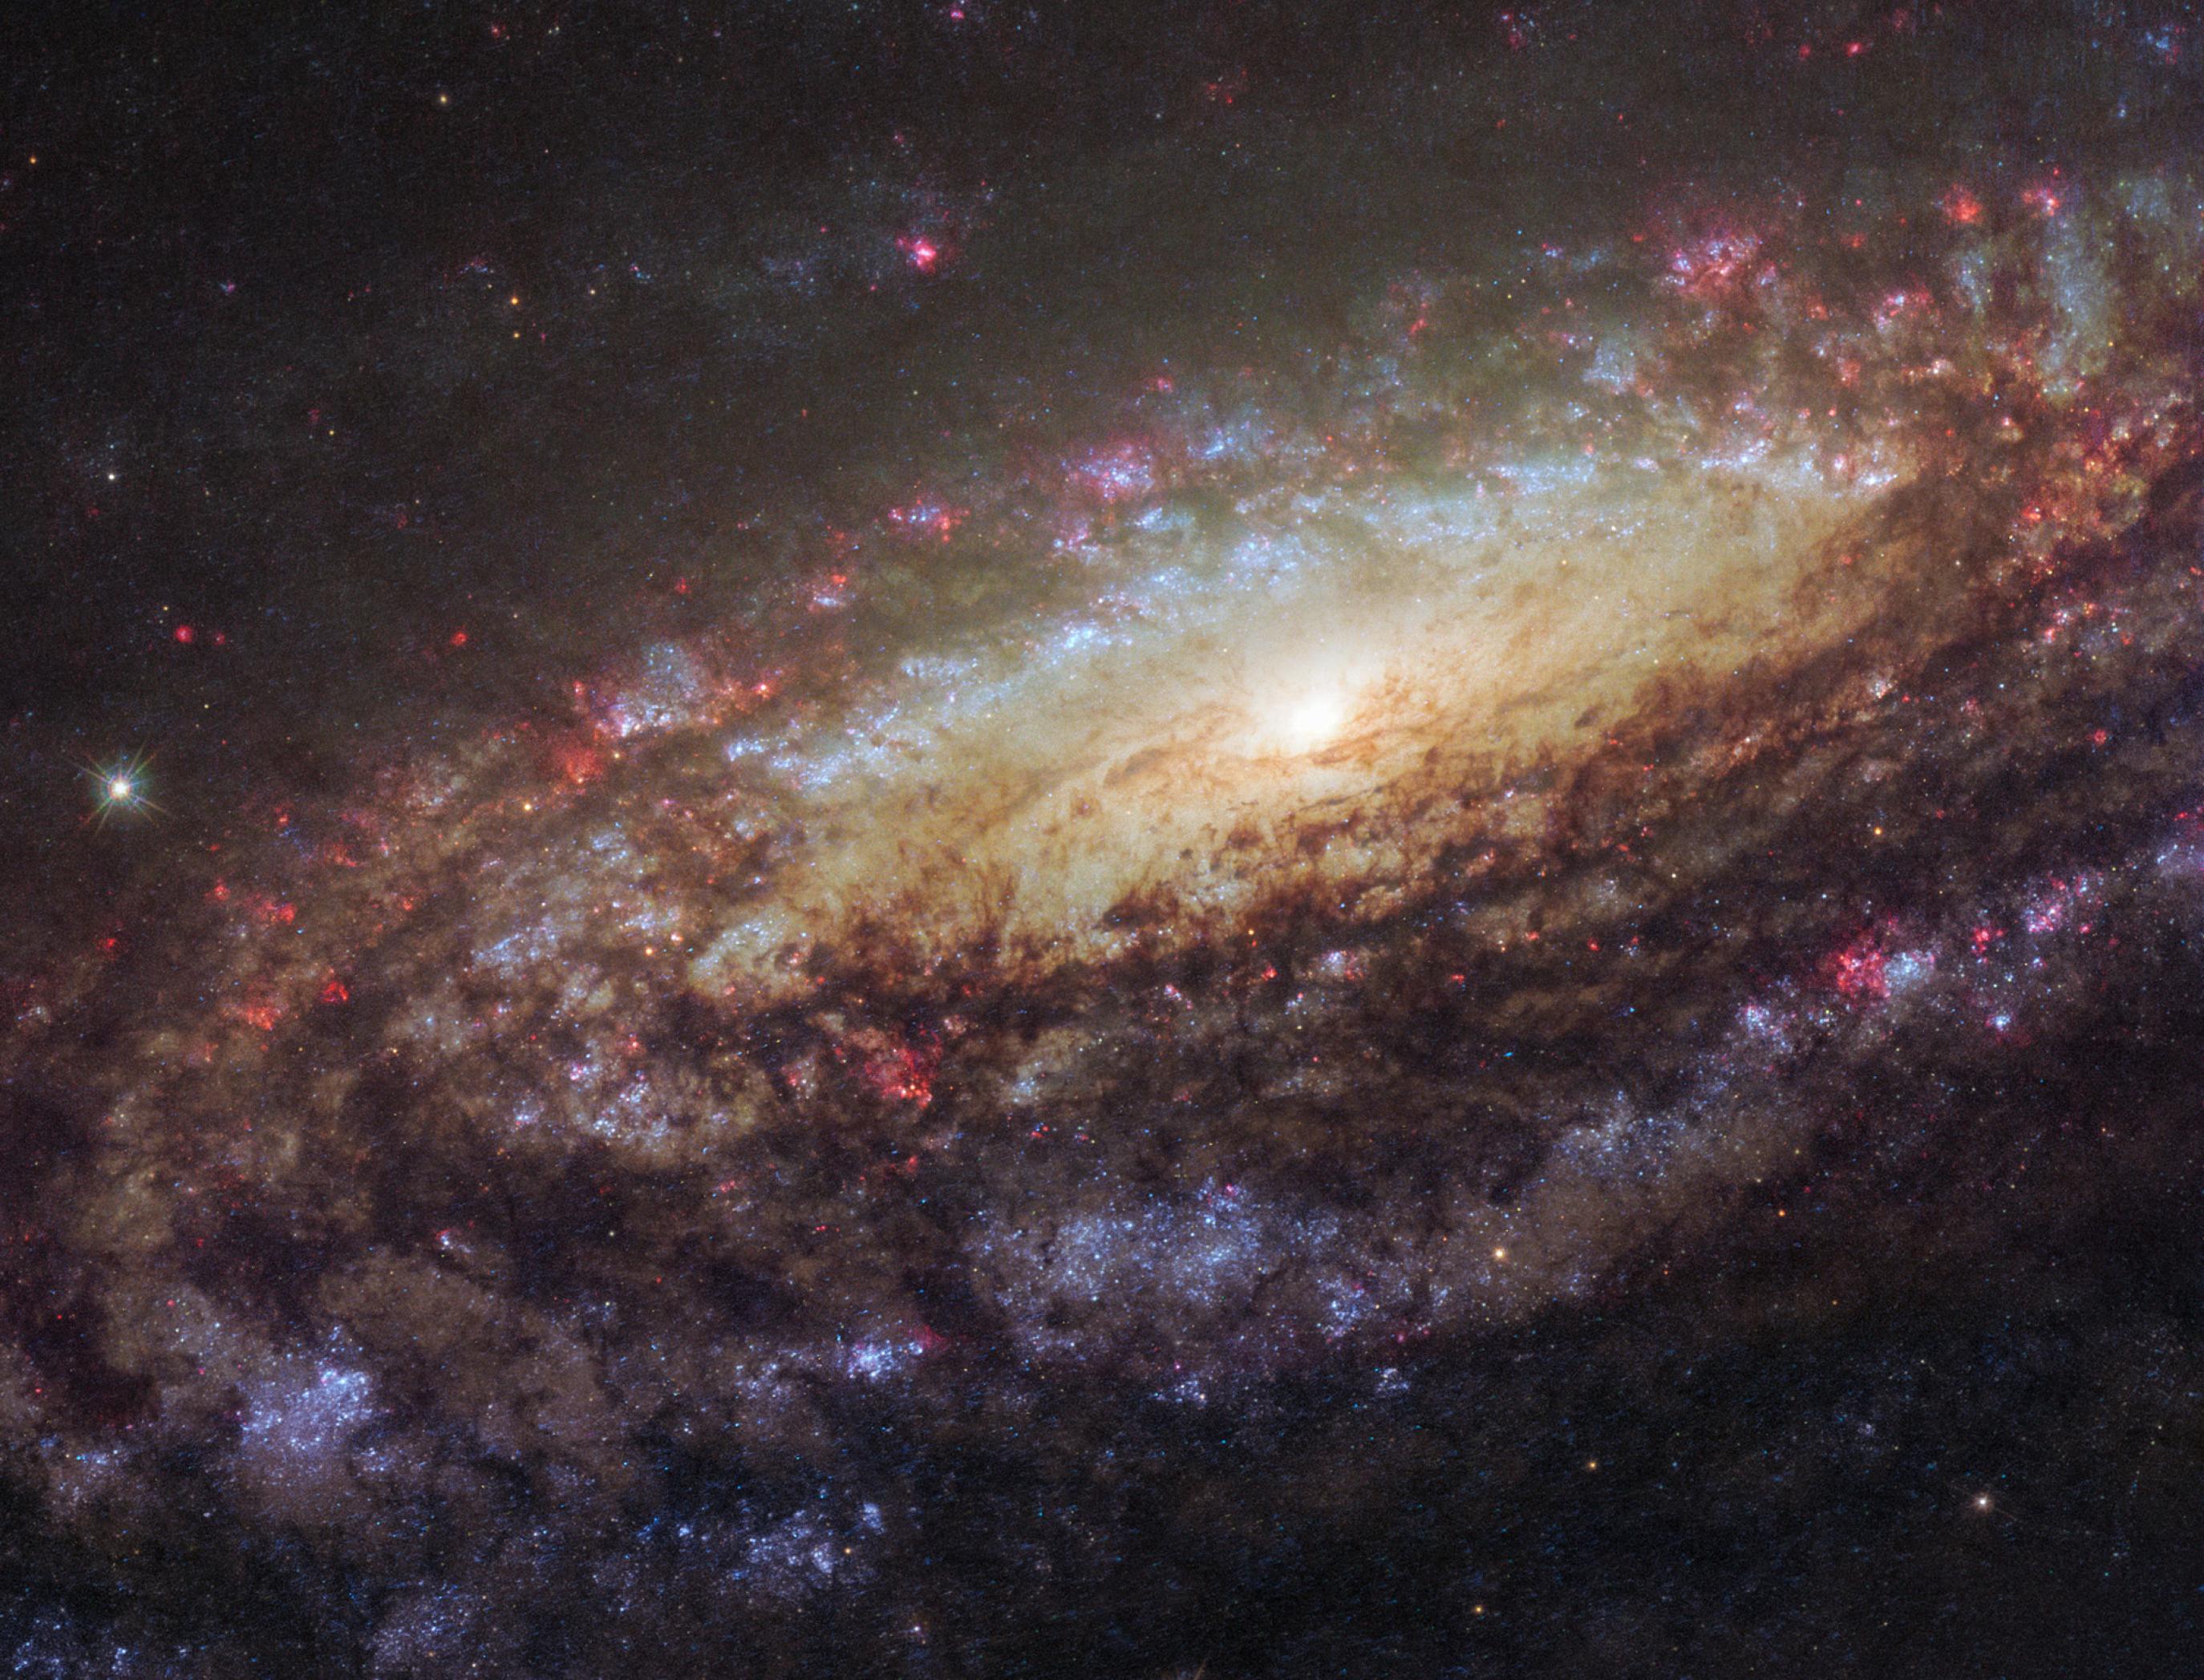 Dieses Foto des Hubble-Weltraumteleskops zeigt die Galaxie NGC 7331, die im Sternbild Pegasus, rund 50 Millionen Jahren von uns entfernt, liegt. Zu sehen ist eine flache, nach vorne geneigte Scheibe, in der Spiralarme zu erkennen sind und unzählige Sterne in verschiedensten Farben leuchten. In den Spiralarmen leuchten hell strahlende, blaue Sterne, die jung und massereich sind. Daneben gibt es in den Spiralarmen rötlich leuchtende Zonen: die Geburtsstäten neuer Sterne. Im zentralen Bereich der Galaxie, etwas rechts oberhalb der Bildmitte sind gelbliche Sterne zu erkennen. Sie sind schon älter und nicht mehr so heiß. NGC 7331 ist eine typische Spiralgalaxie, so wie auch unsere Milchstraße. Von außen betrachtet, würde unsere Galaxis daher ganz ähnlich aussehen.